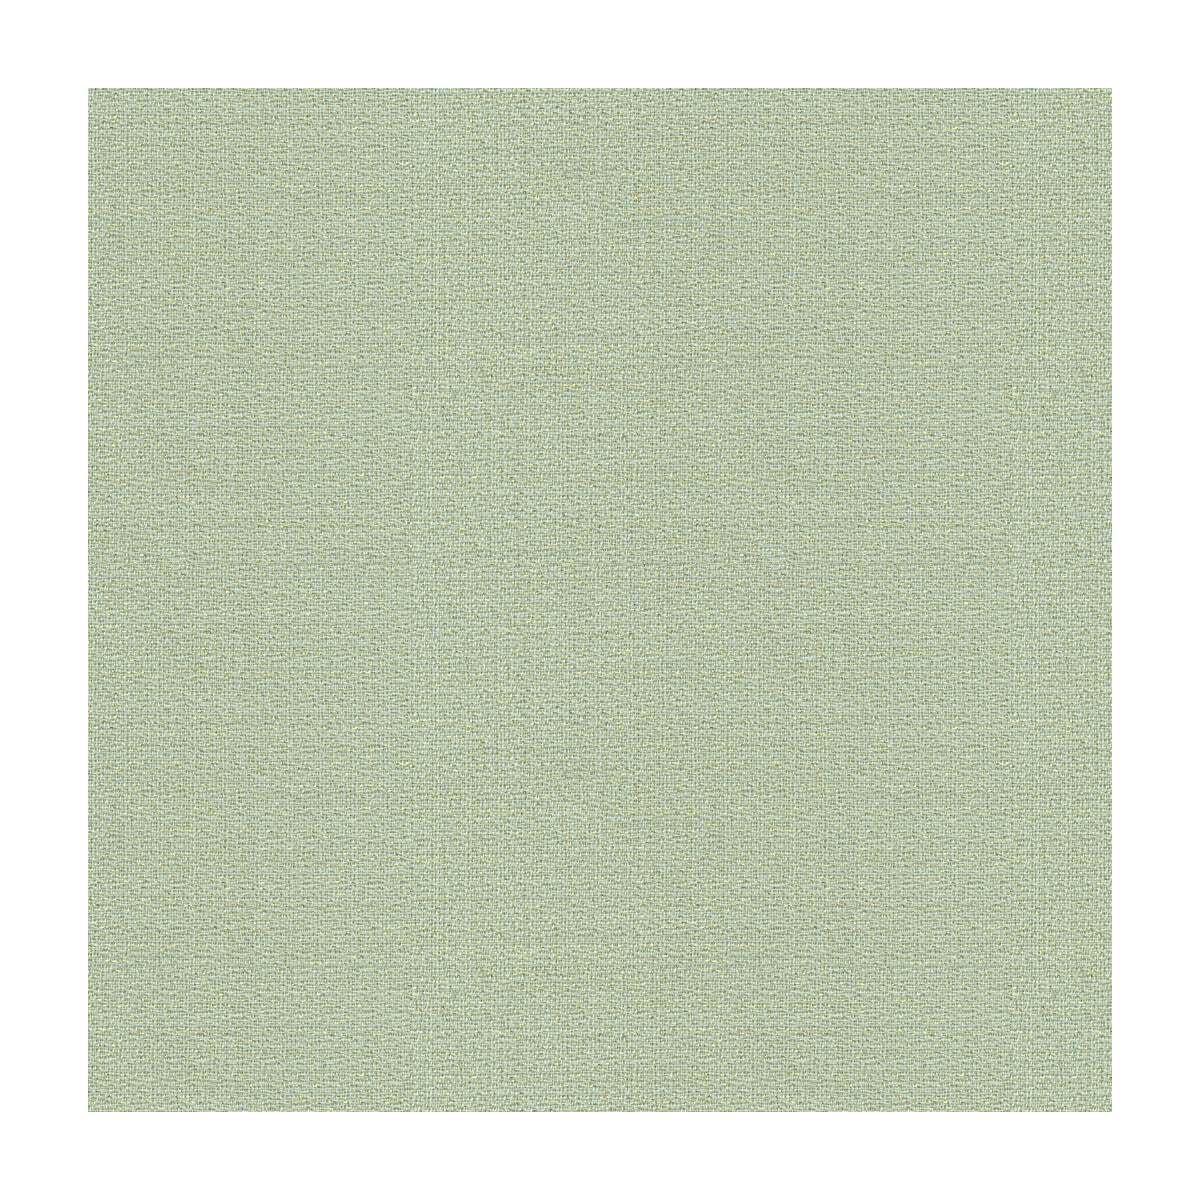 Glisten Wool fabric in moonstruck color - pattern GWF-3045.15.0 - by Lee Jofa Modern